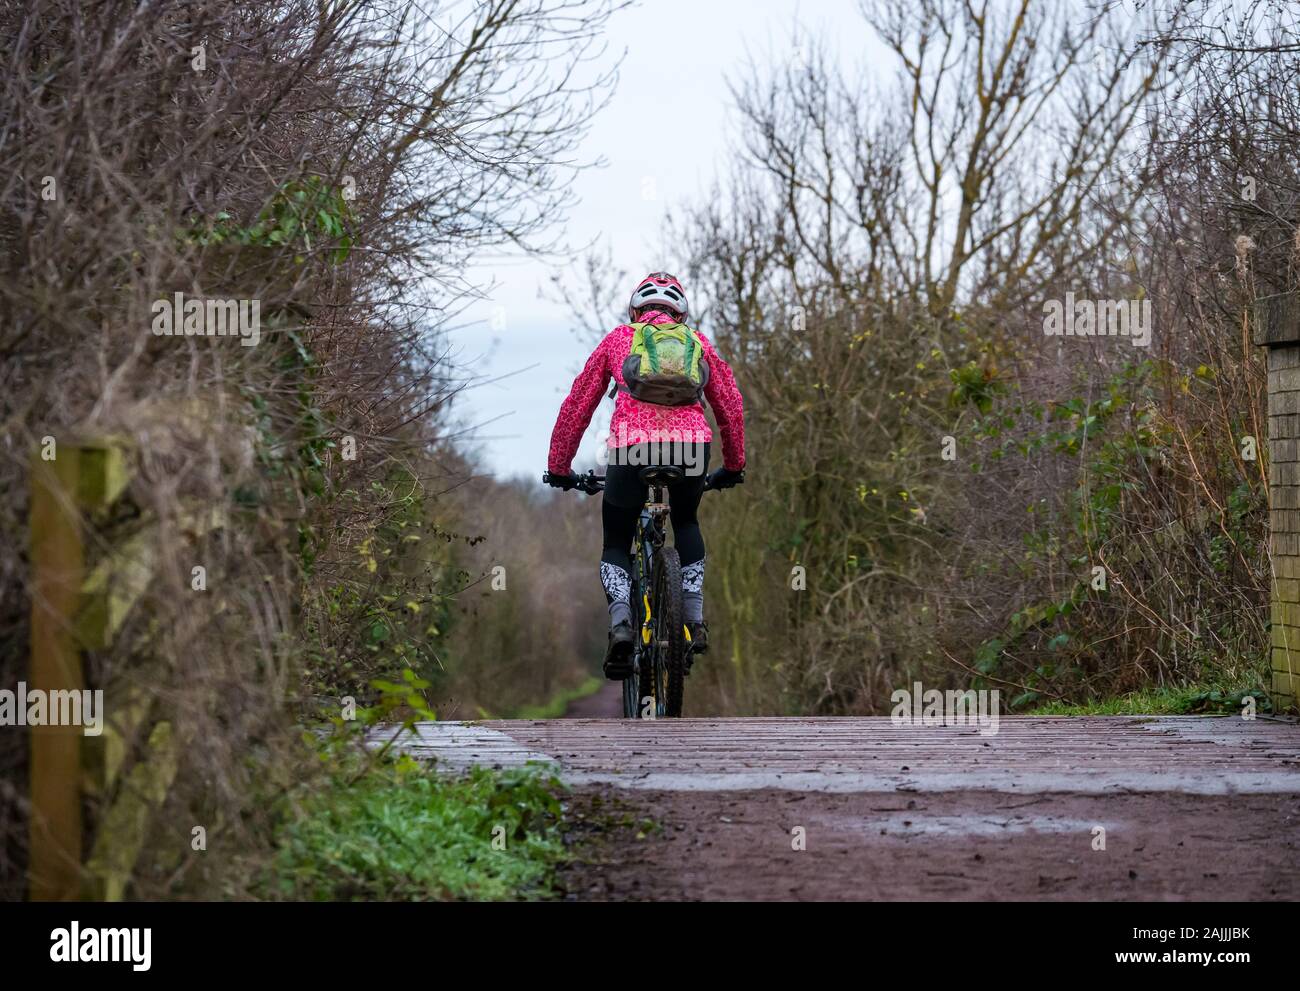 Femmina di mountain bike ciclista su terreni fangosi percorso ferroviario percorso in bicicletta che va oltre il percorso ferroviario ponte, East Lothian, Scozia, Regno Unito Foto Stock